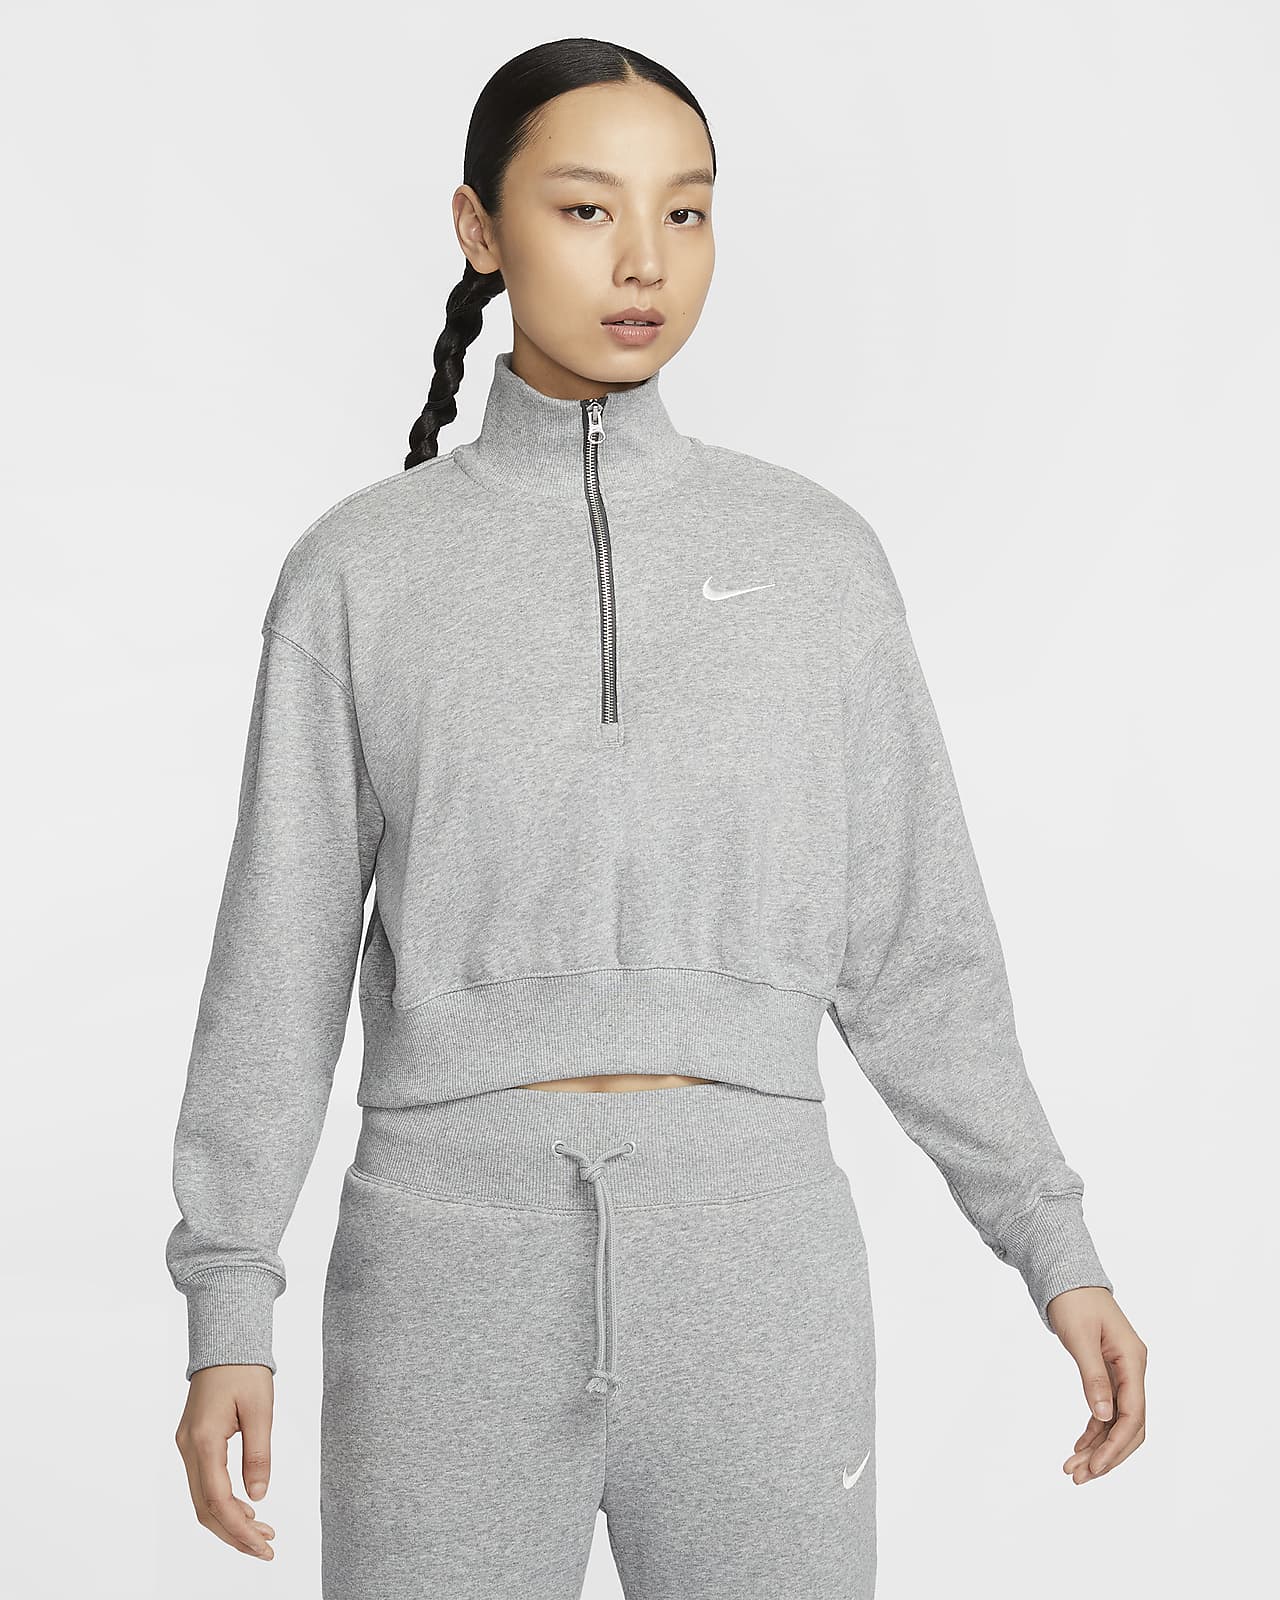 Nike Sportswear Phoenix Fleece 女款 1/4 拉鍊短版運動衫